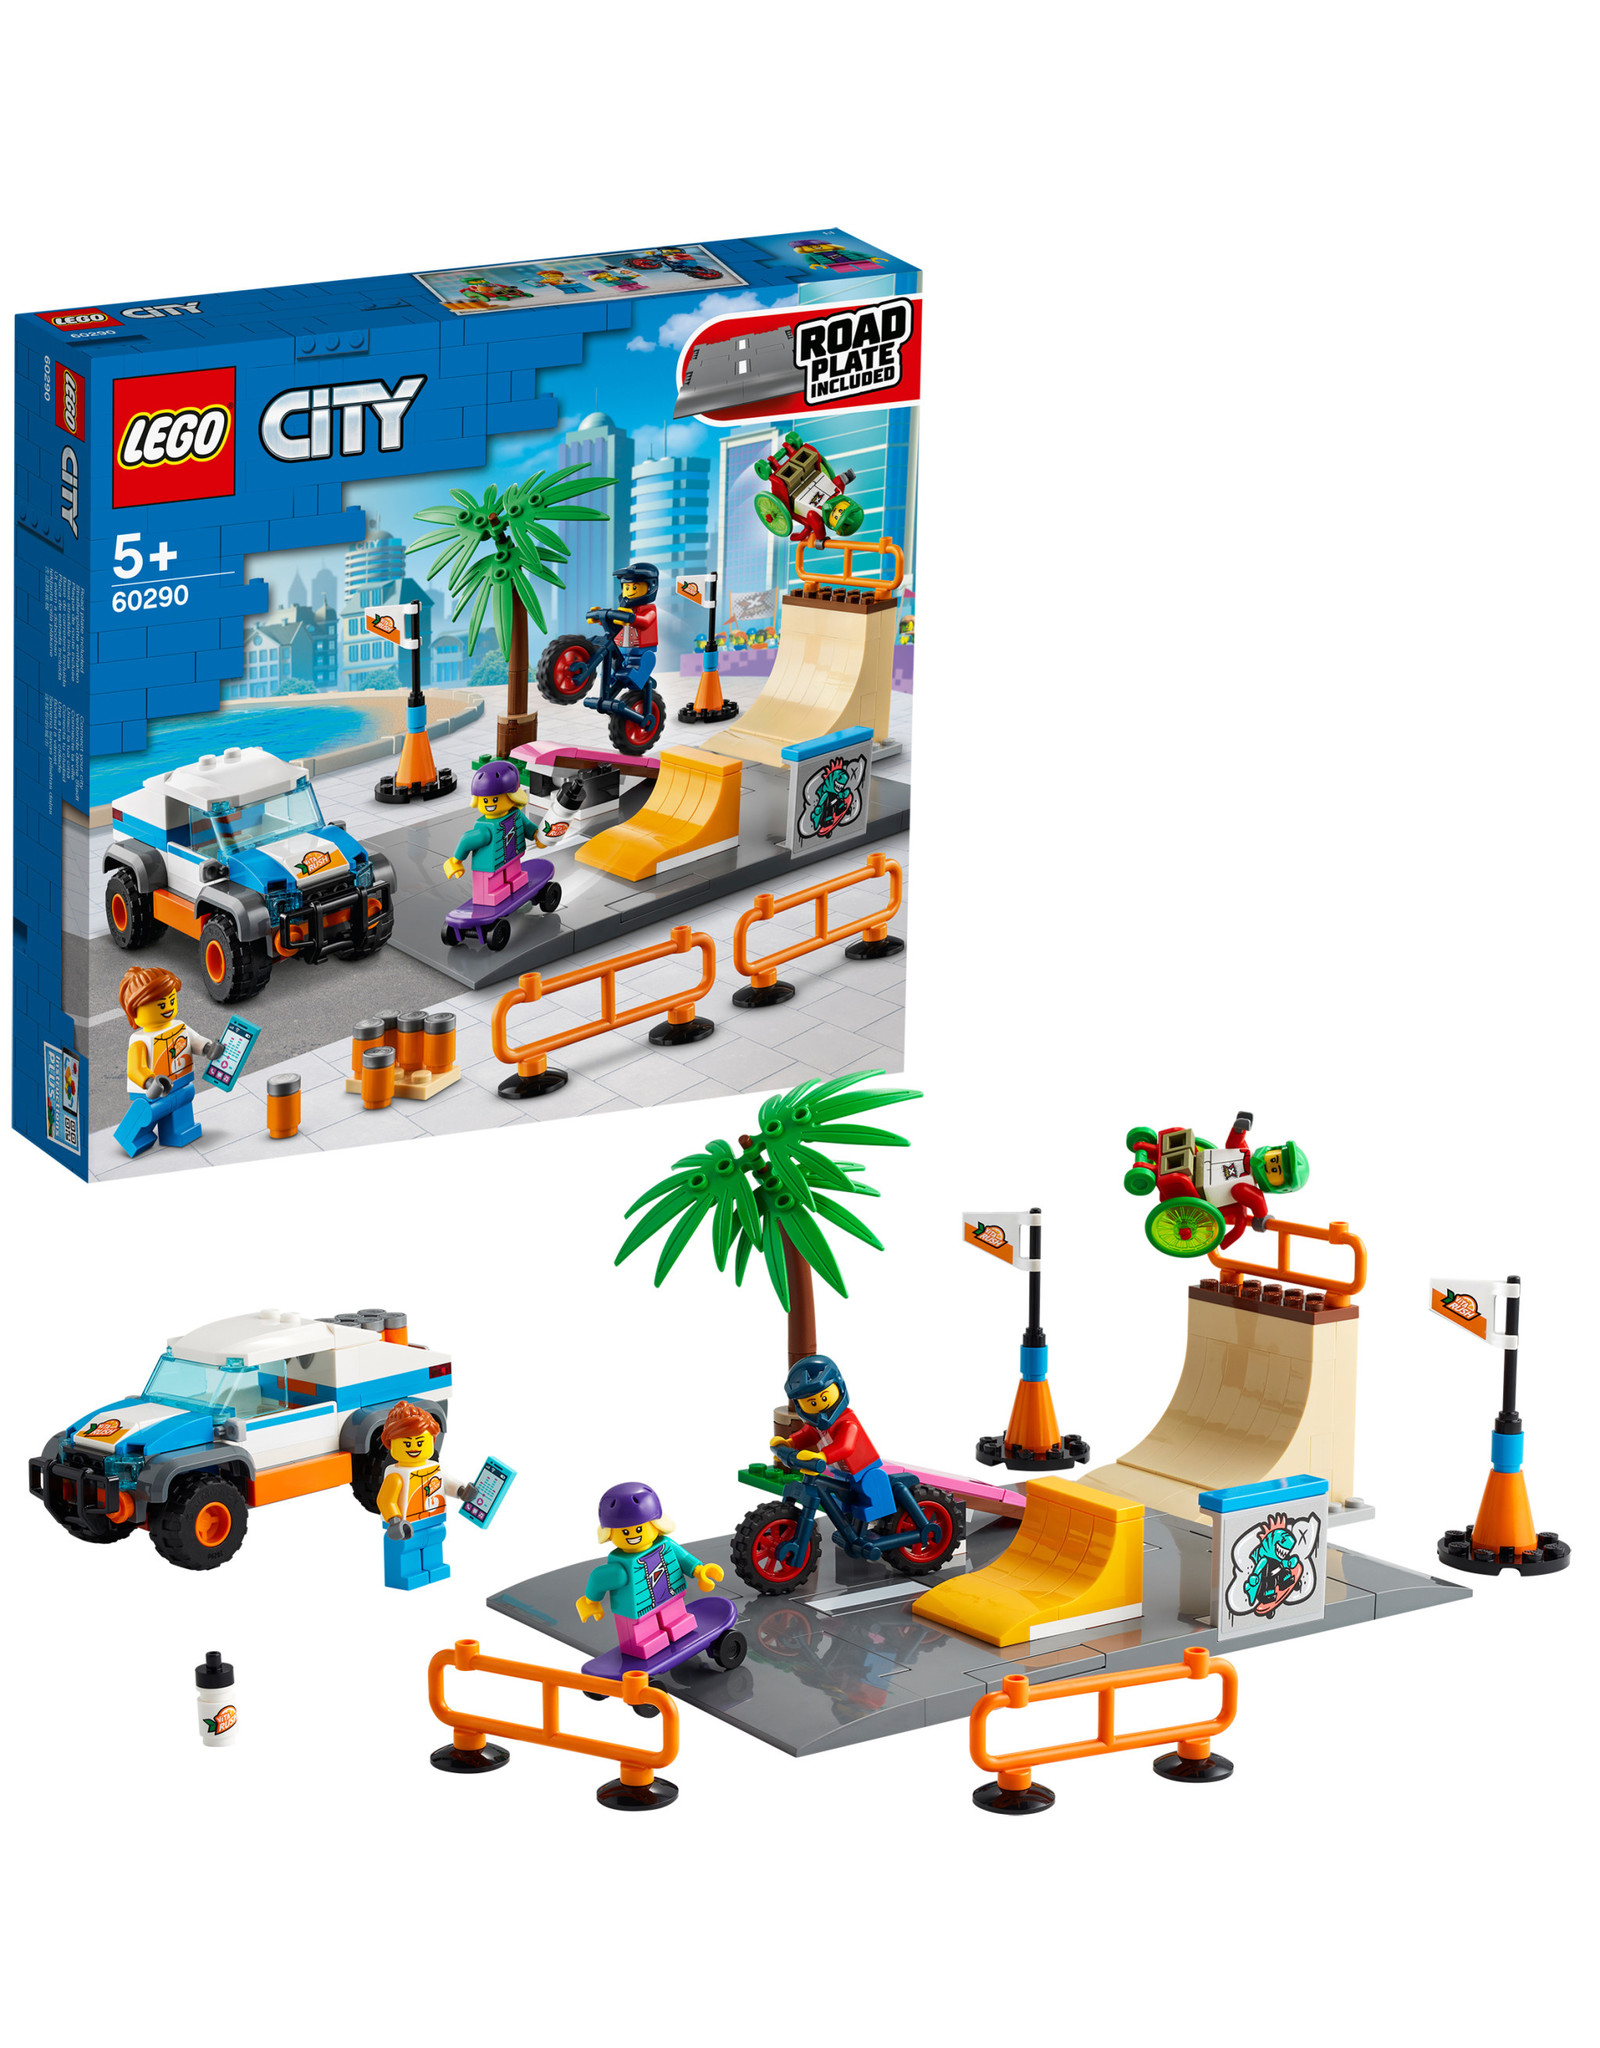 LEGO Lego City 60290 Skate Park